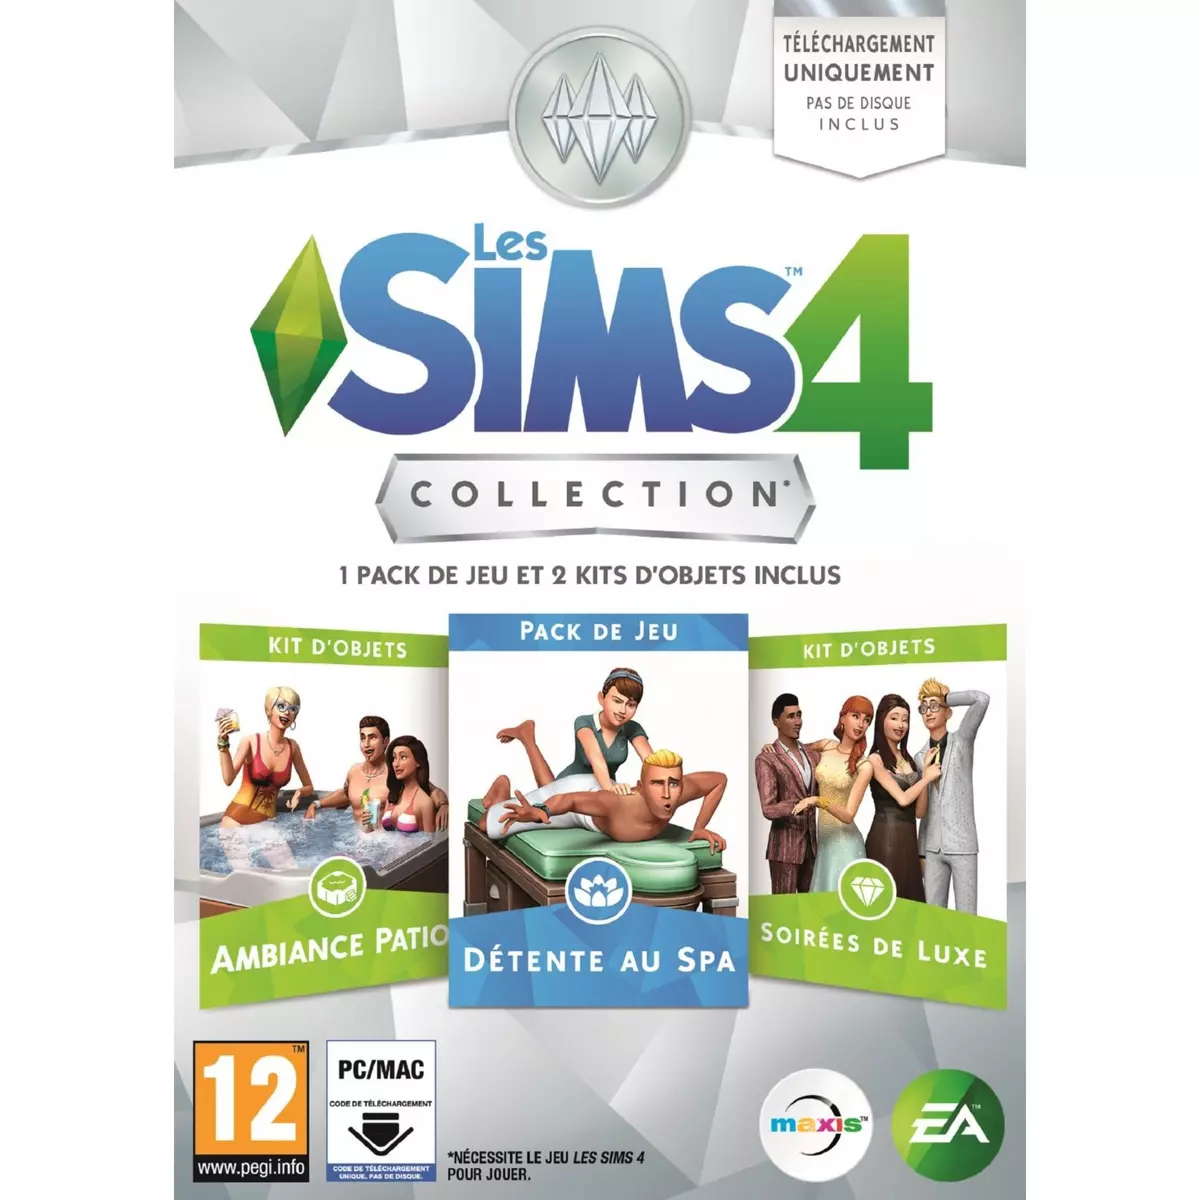 Les Sims 4 Collection : 1 Pack de jeu et 2 Kits d'objets inclus